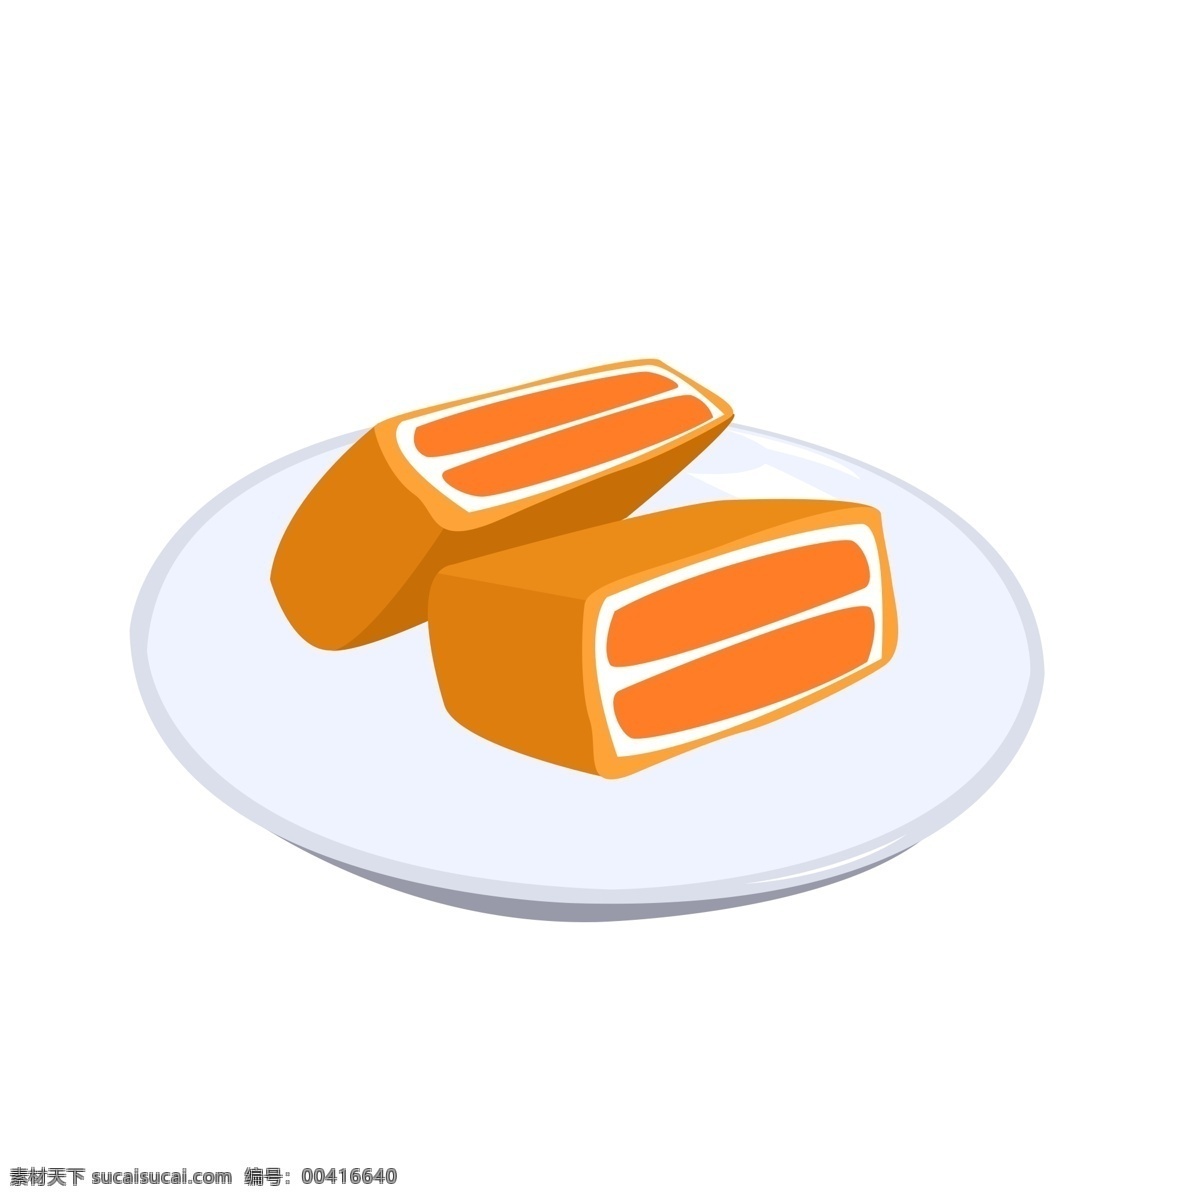 橙色 卡通 食物 甜品 食用 芒果 班 戟 透明 水果 班戟 奶油